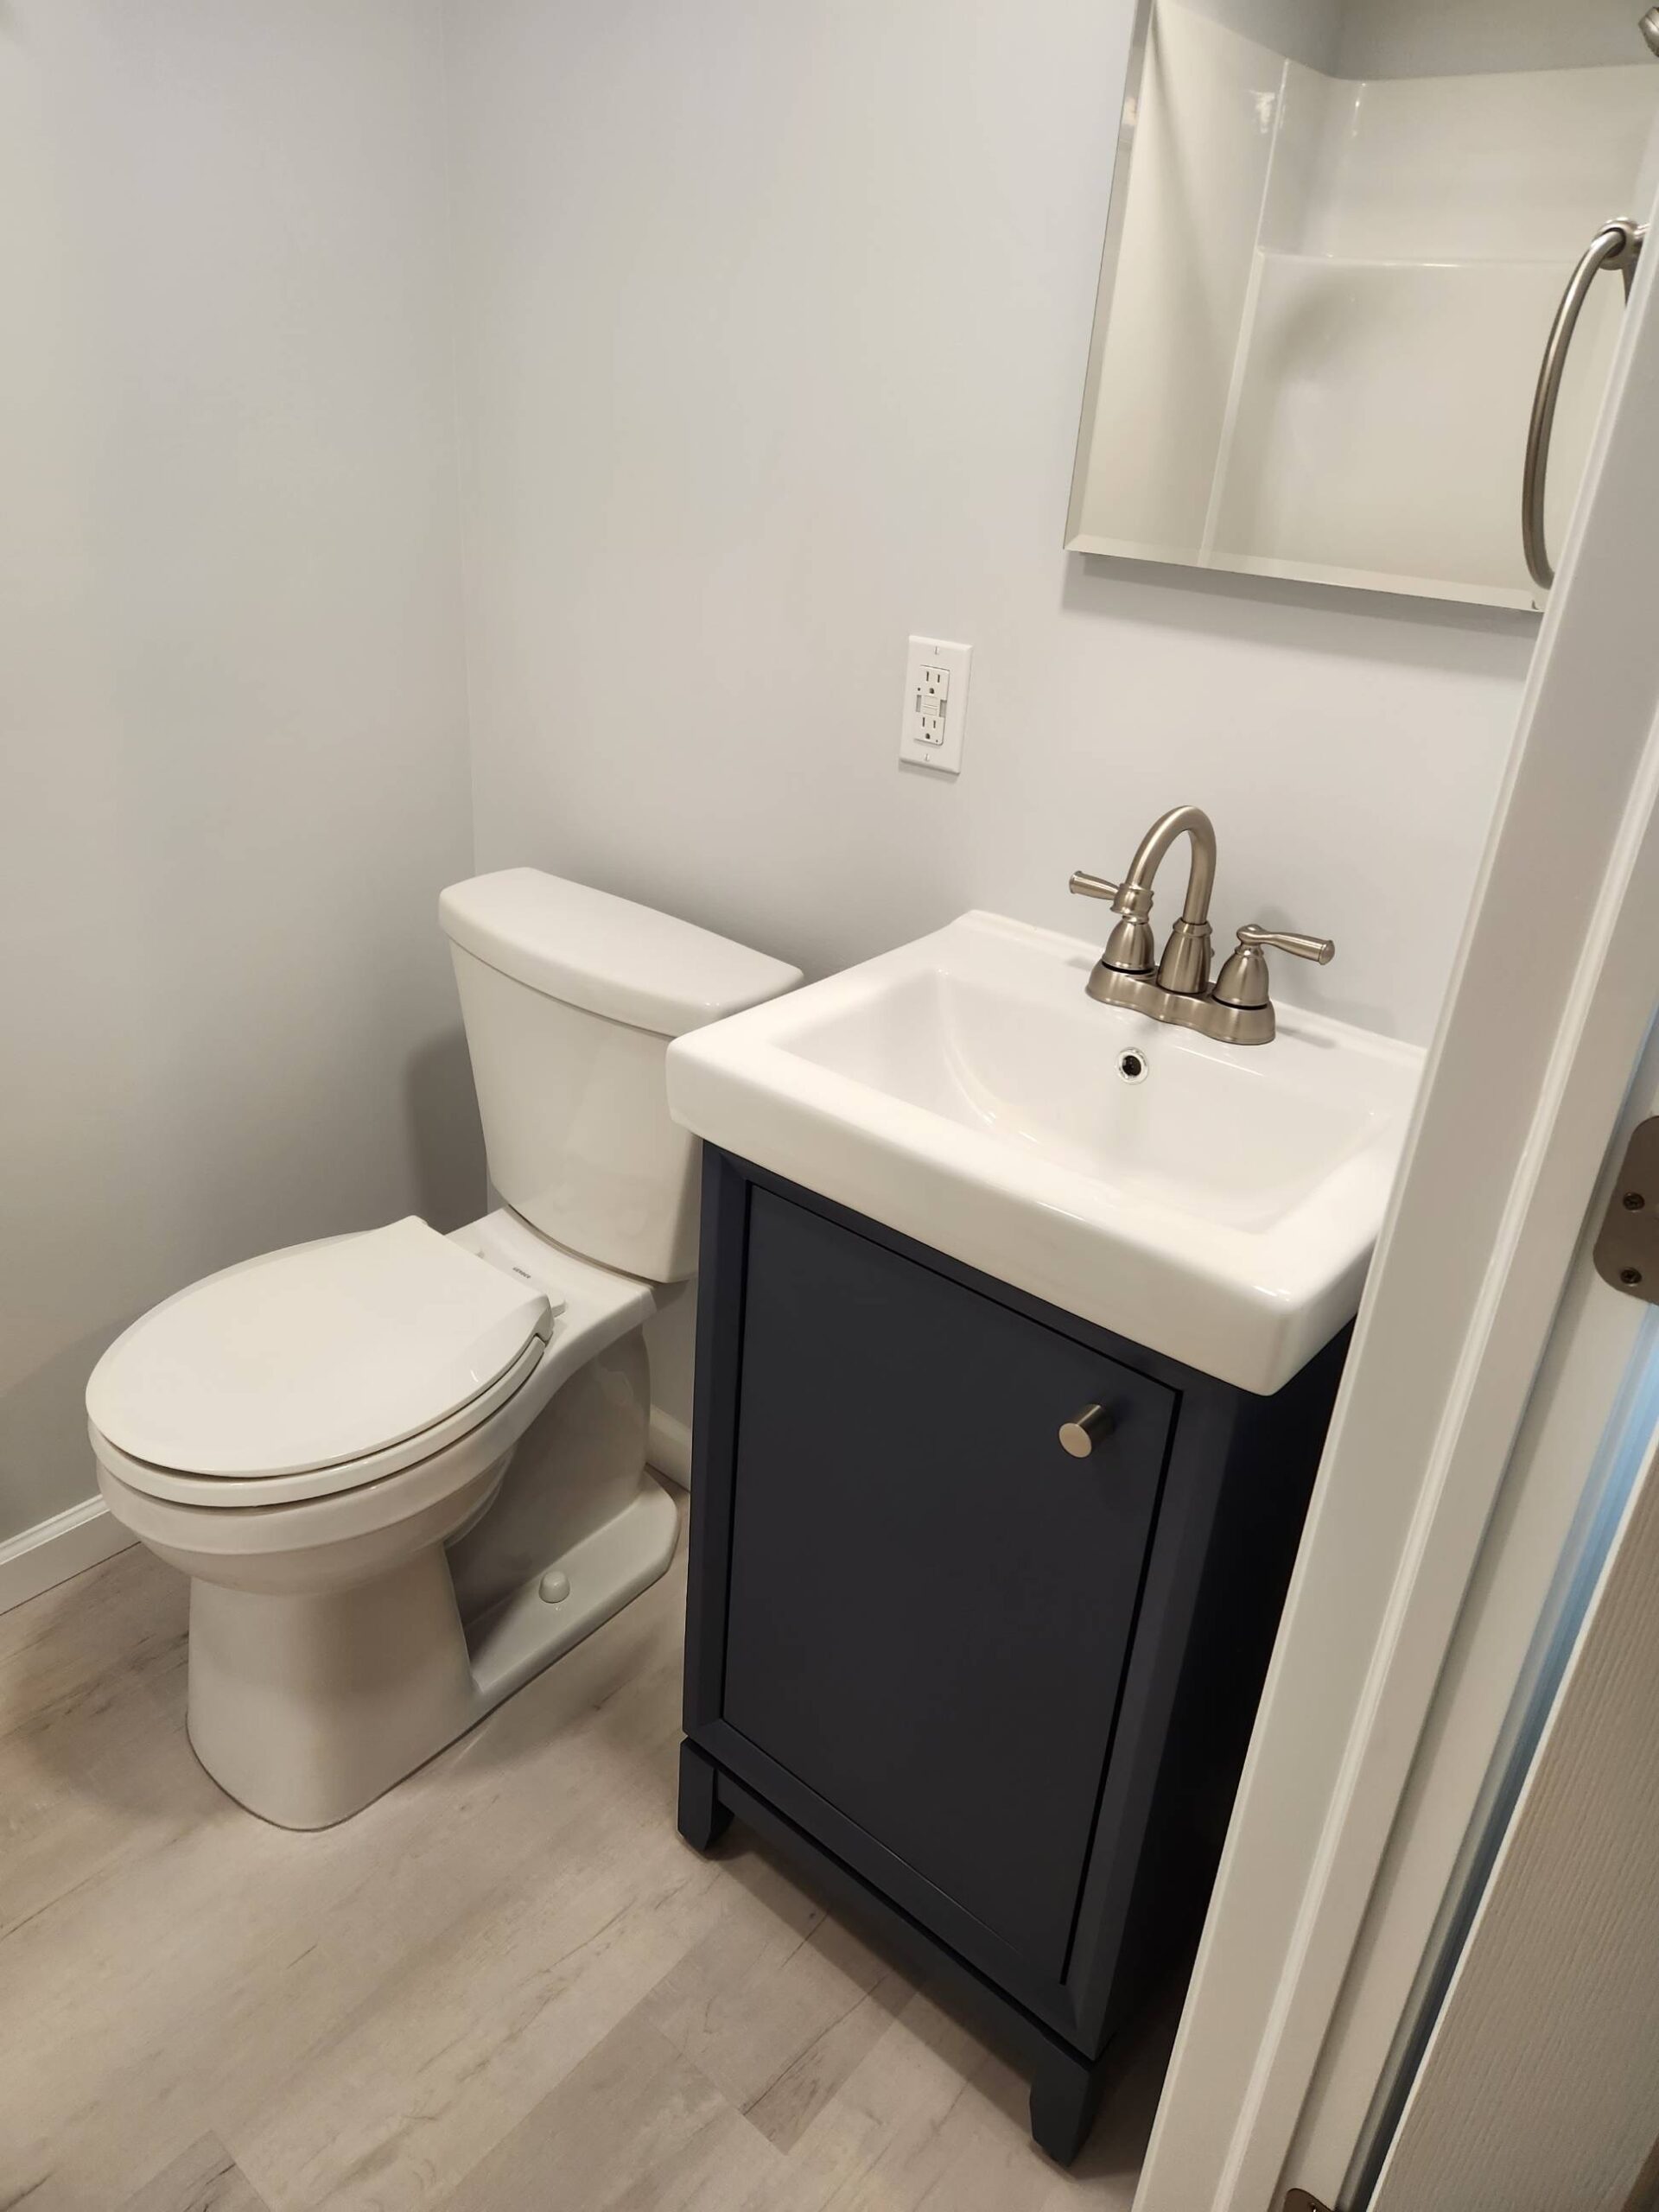 Partial bathroom remodel-3